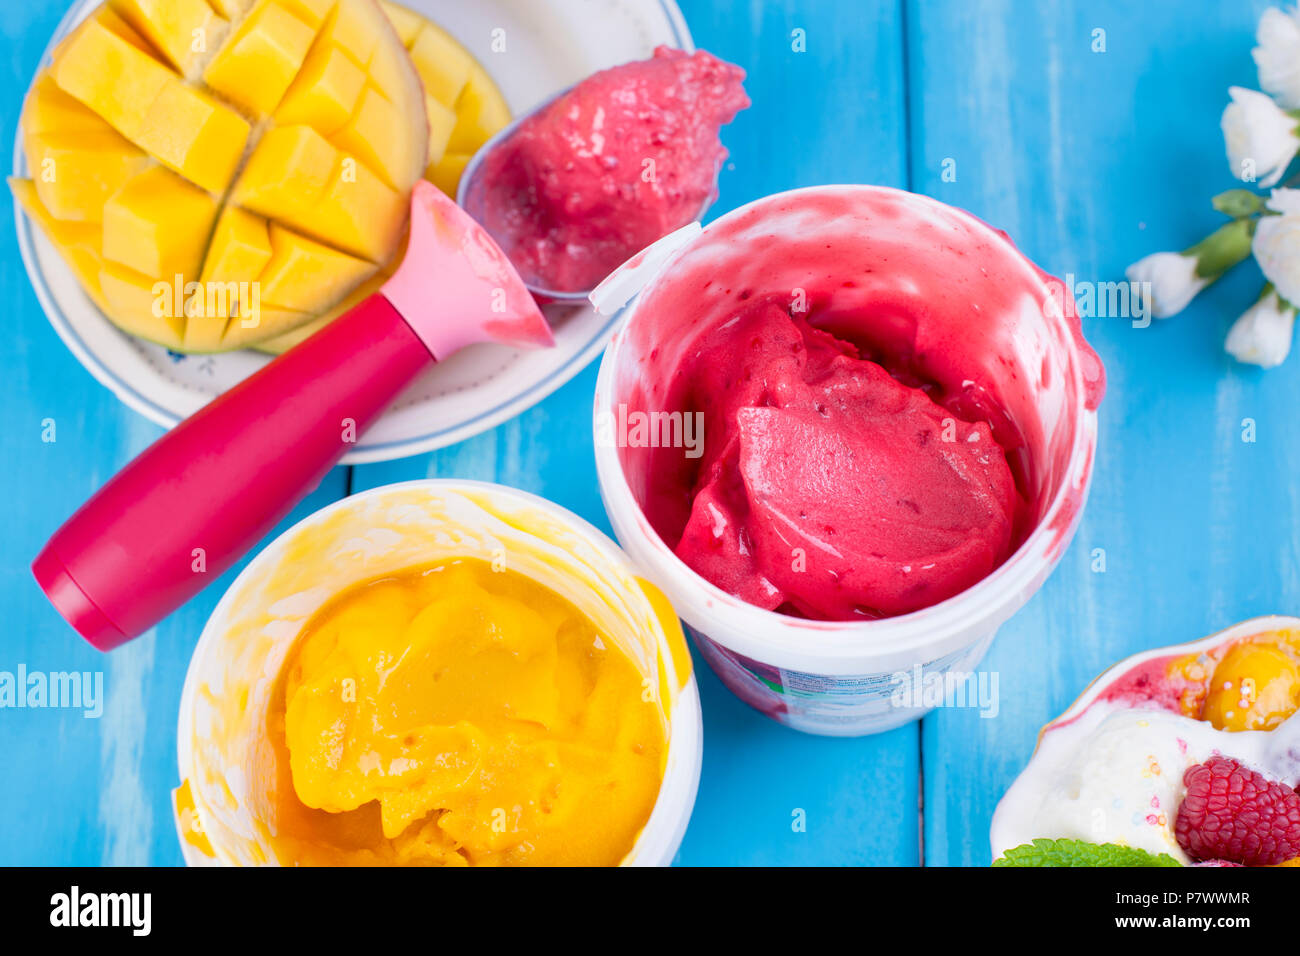 Gelato di frutta con mango e lamponi in una benna pack. Cucchiaio per gelato. Sfondo blu e fiori. copia di spazio. Foto Stock